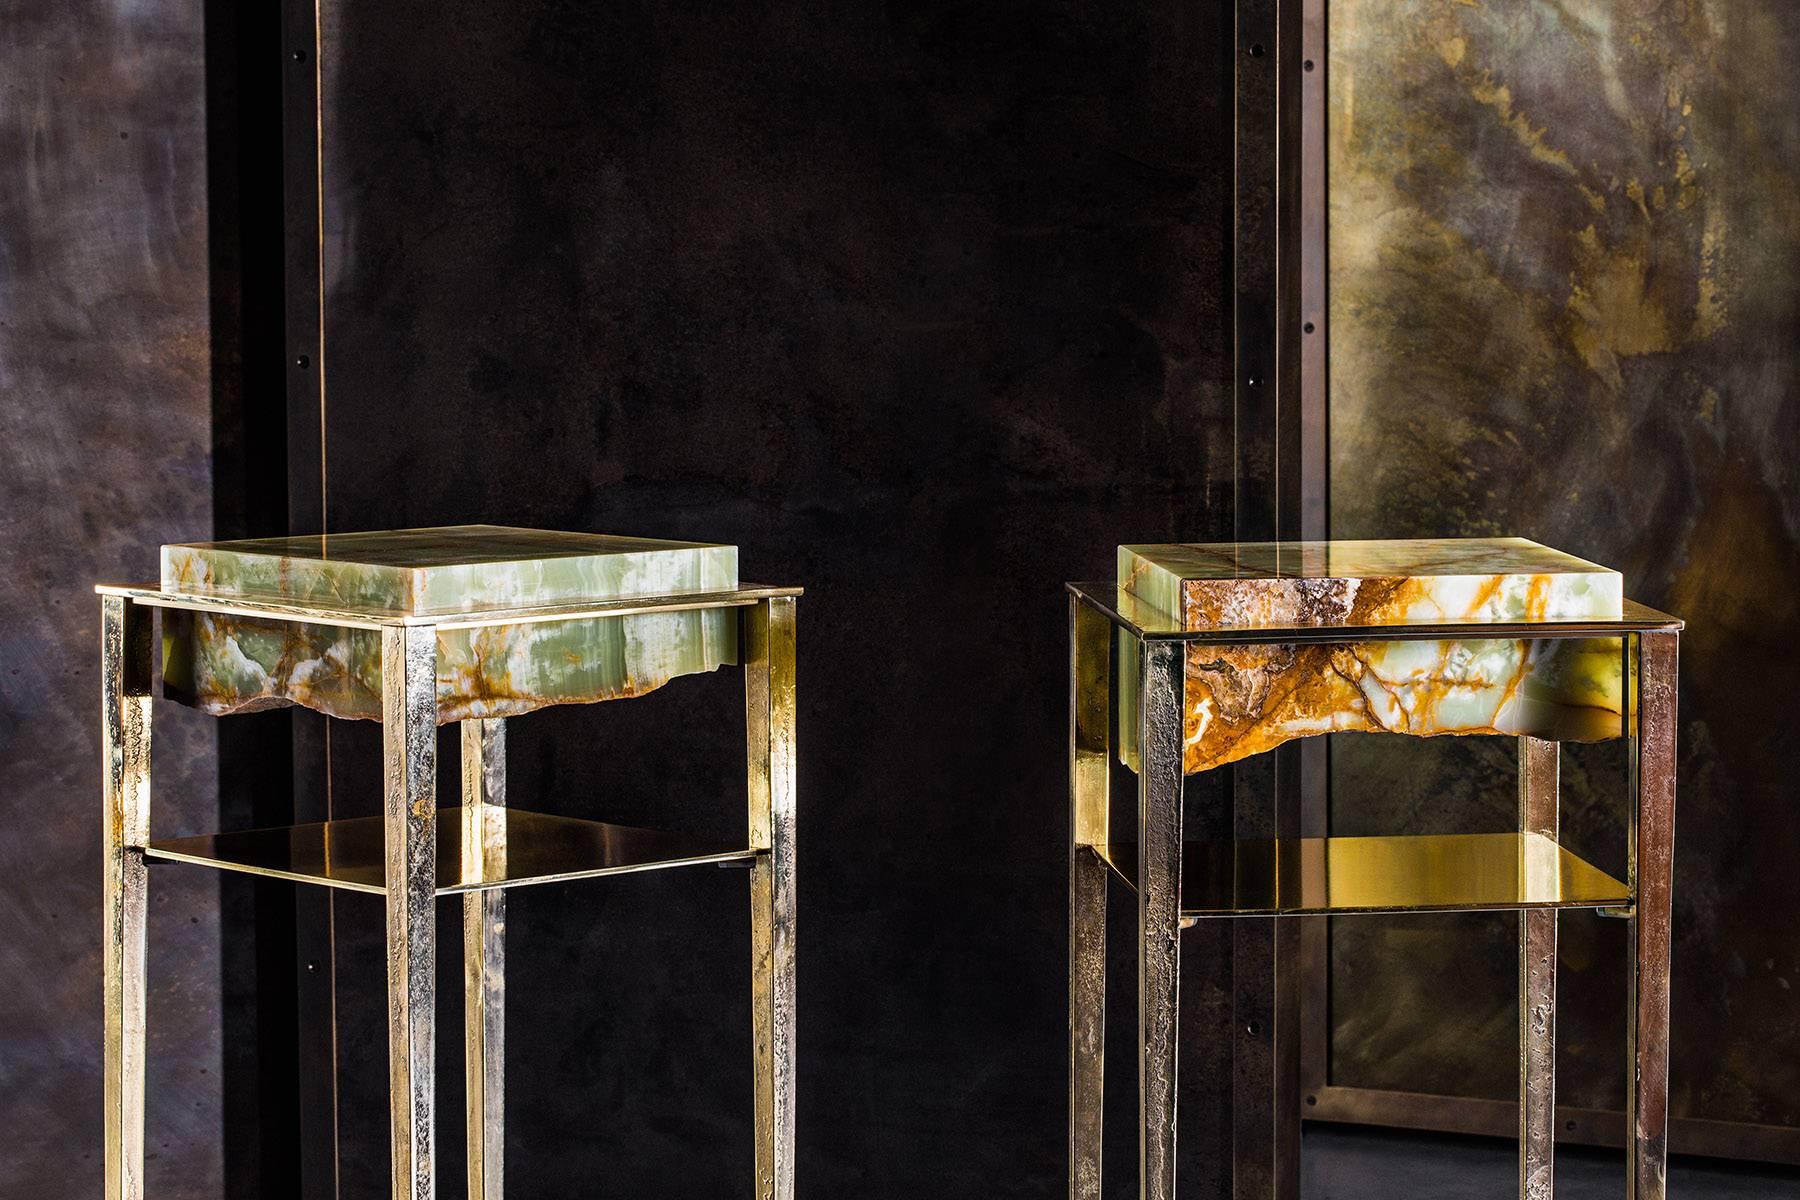 Chacune de ces tables uniques, créées par l'artiste et maître-artisan acclamé Gianluca Pacchioni, est fabriquée à la main dans le studio du sculpteur à Milan. Des dalles d'onyx vertes provenant de sources individuelles et taillées à la main sont